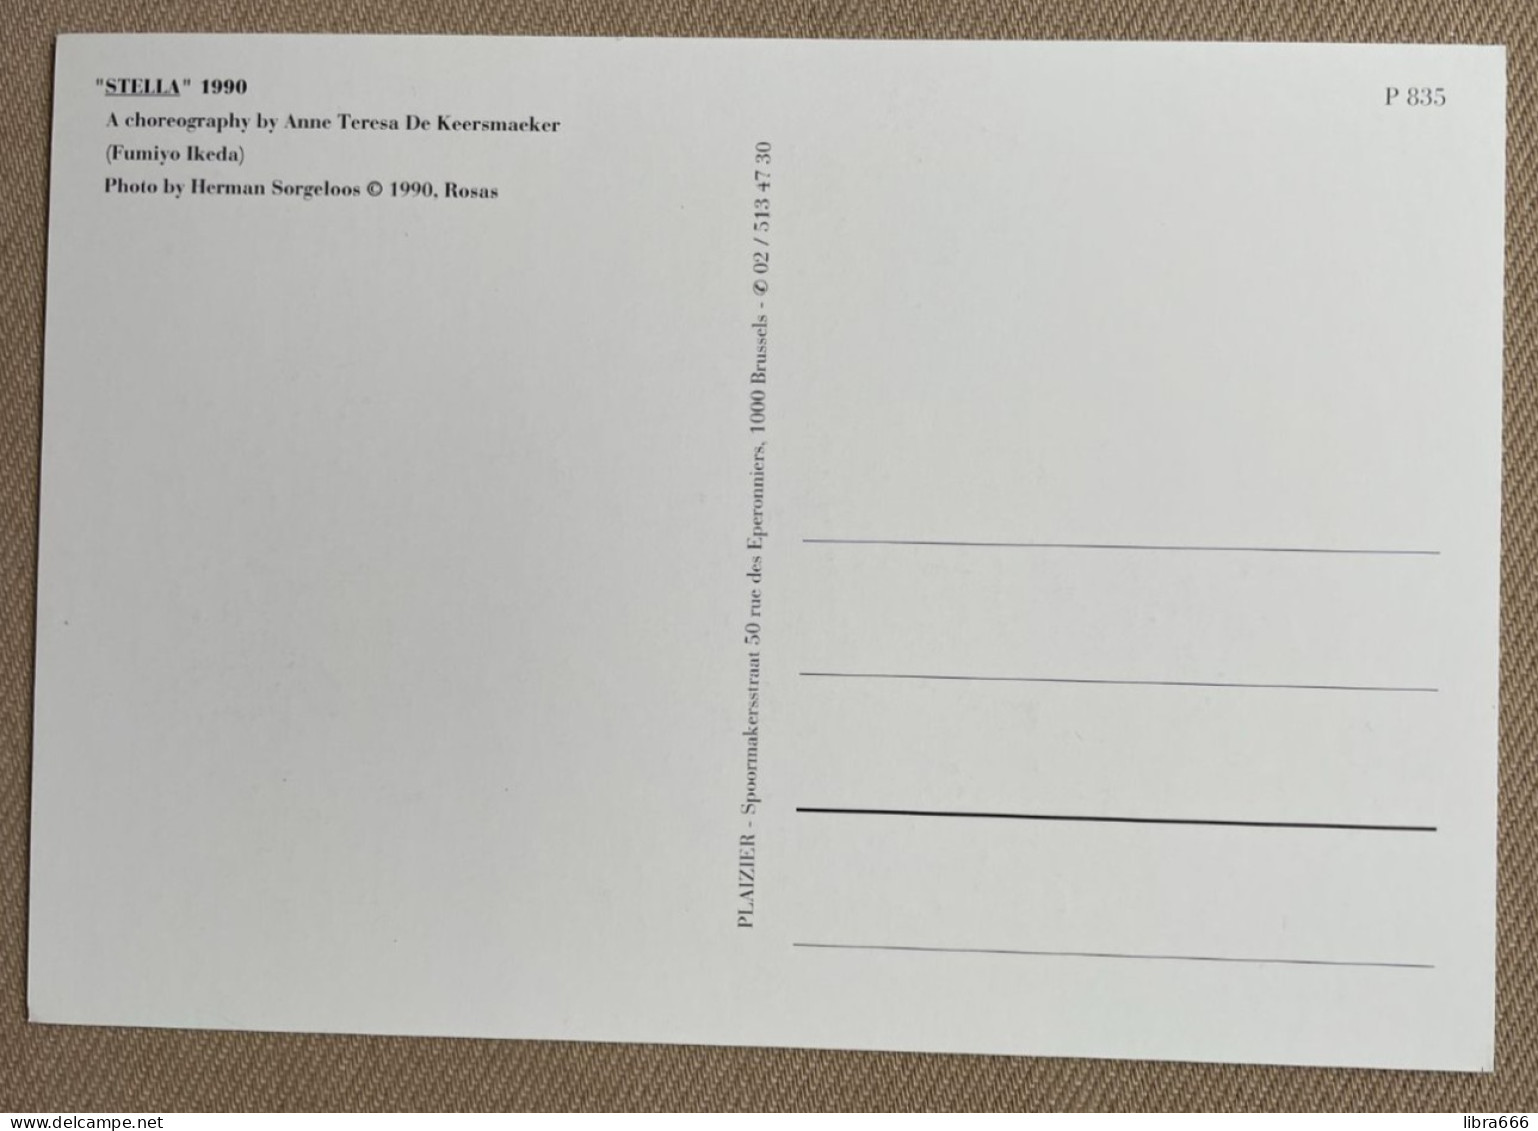 Booklet (10 cards) - HERMAN SORGELOOS - Rosas / Anne Teresa De Keersmaeker - De Munt, Brussel - Publ. PLAIZIER 1996